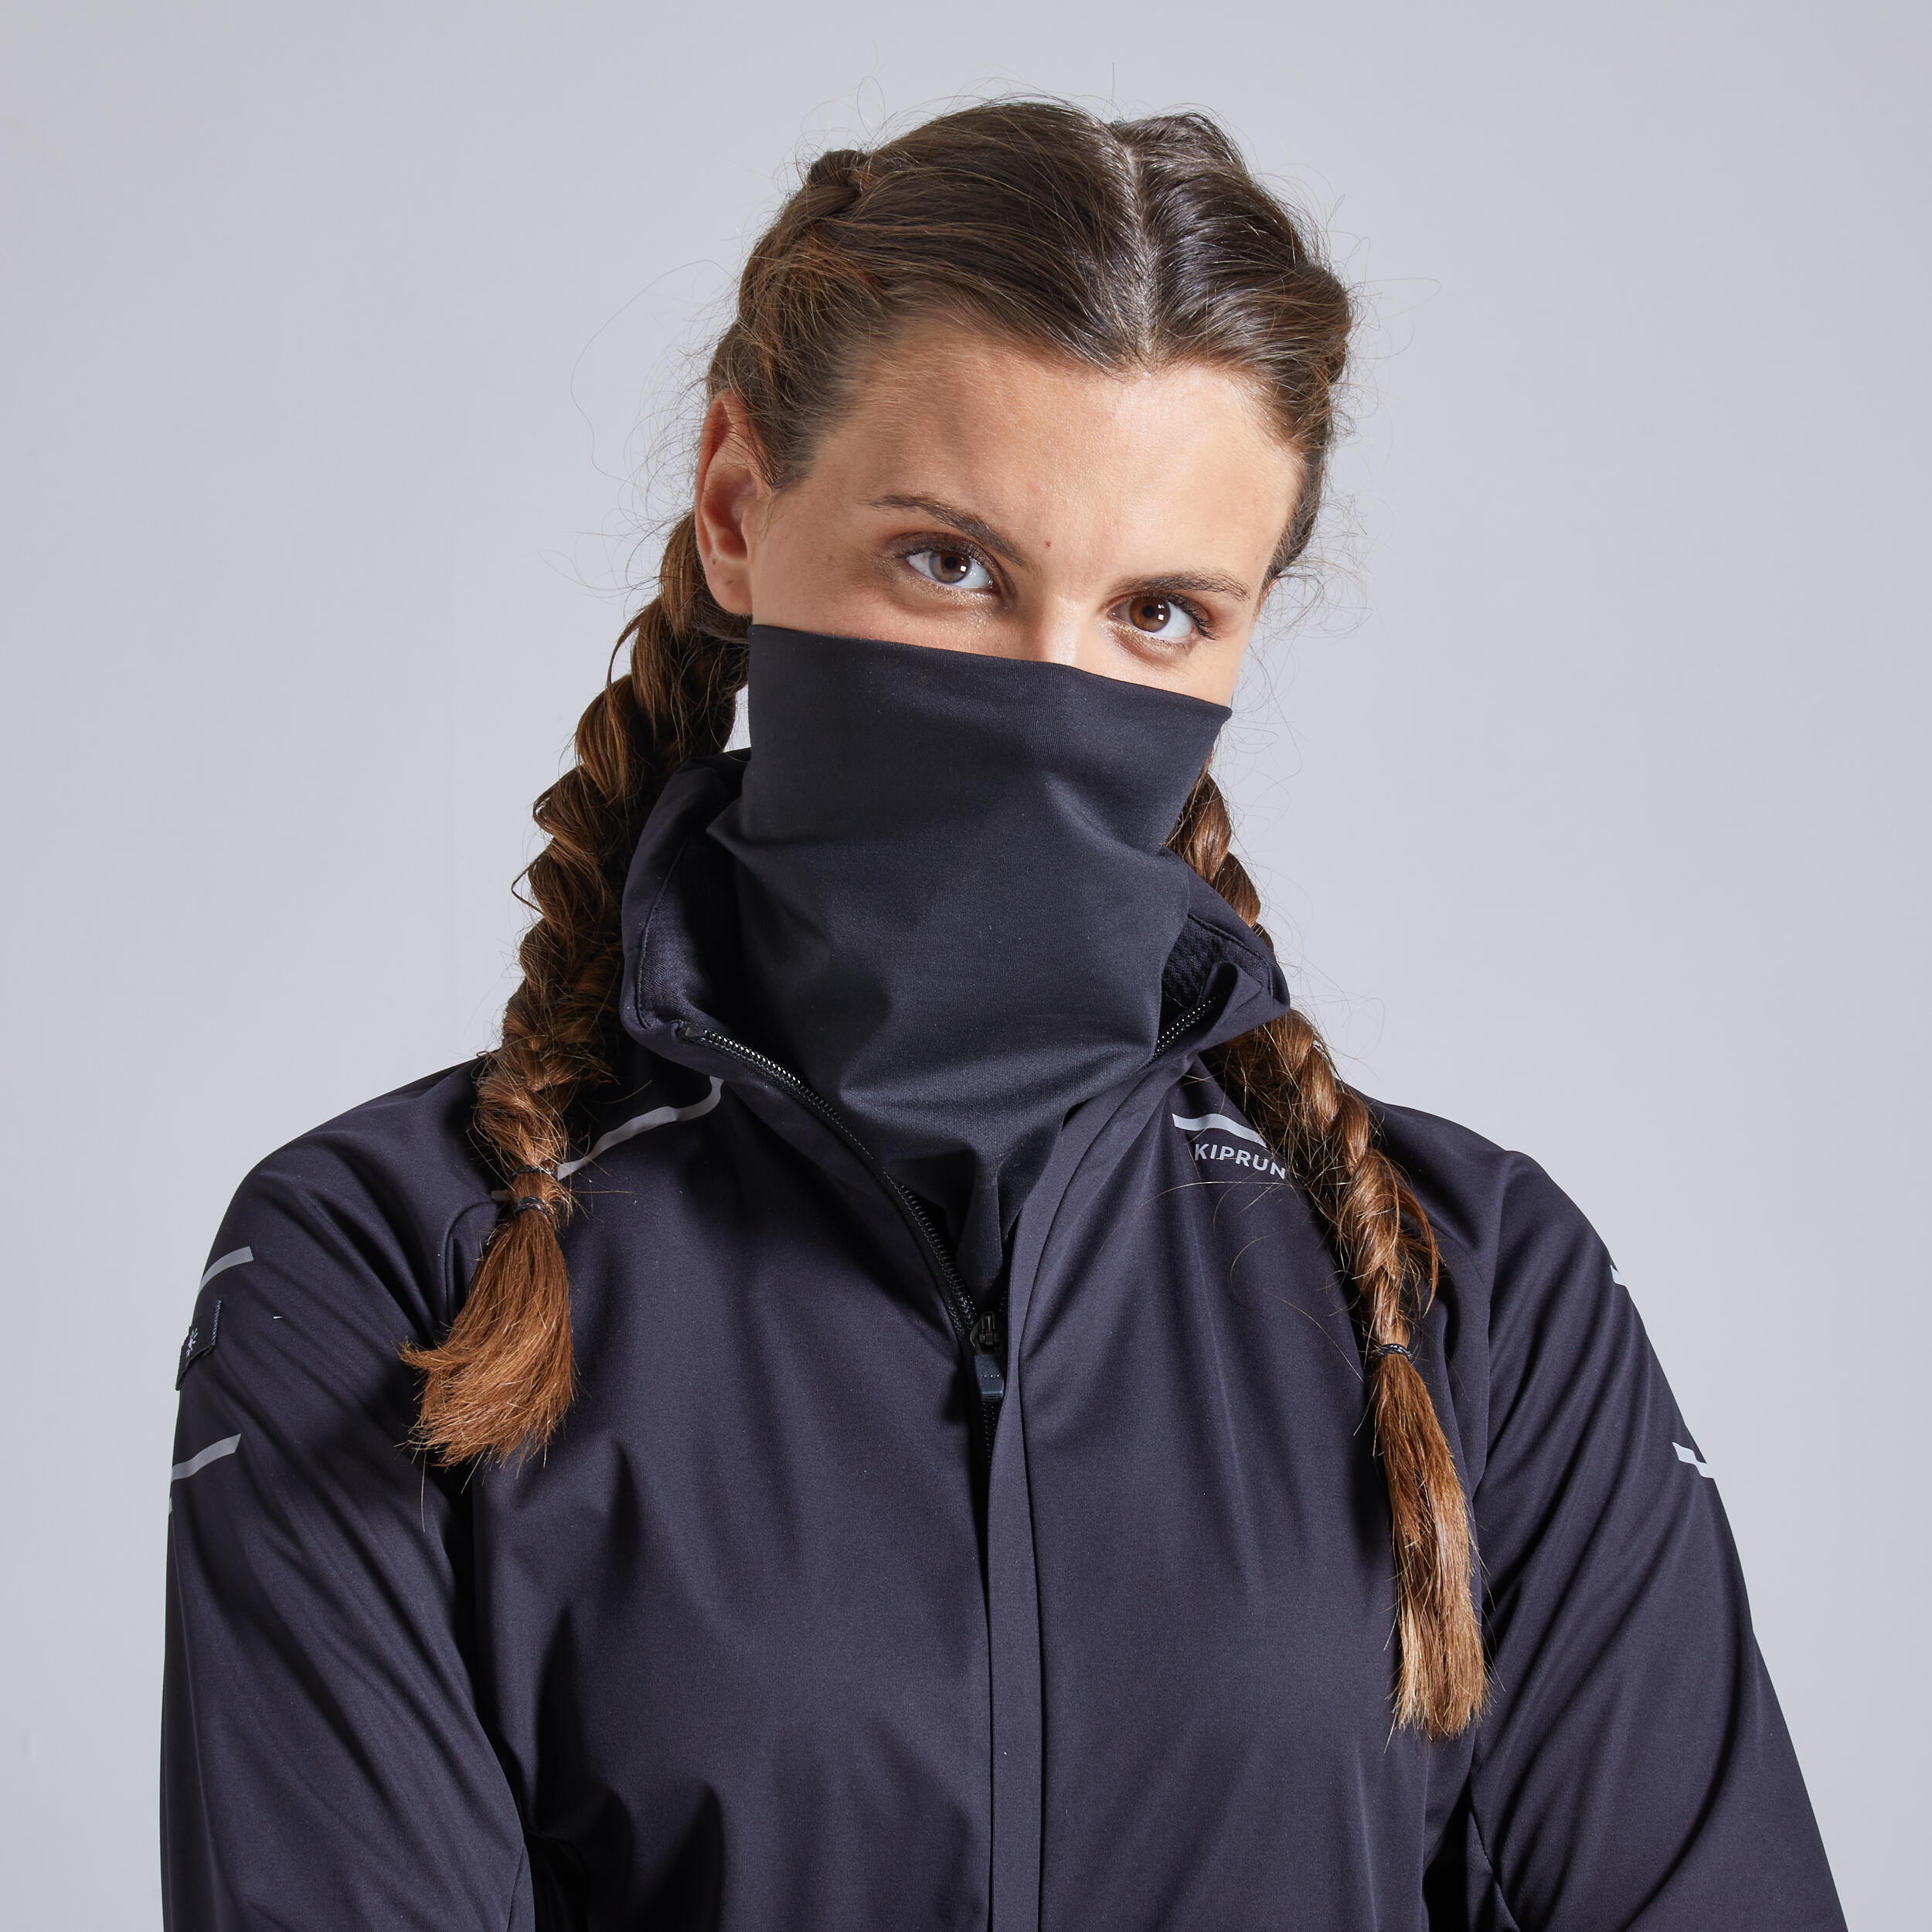 Kiprun Warm Regul Women's Running Water Repellent Windproof Jacket - Black 7/12